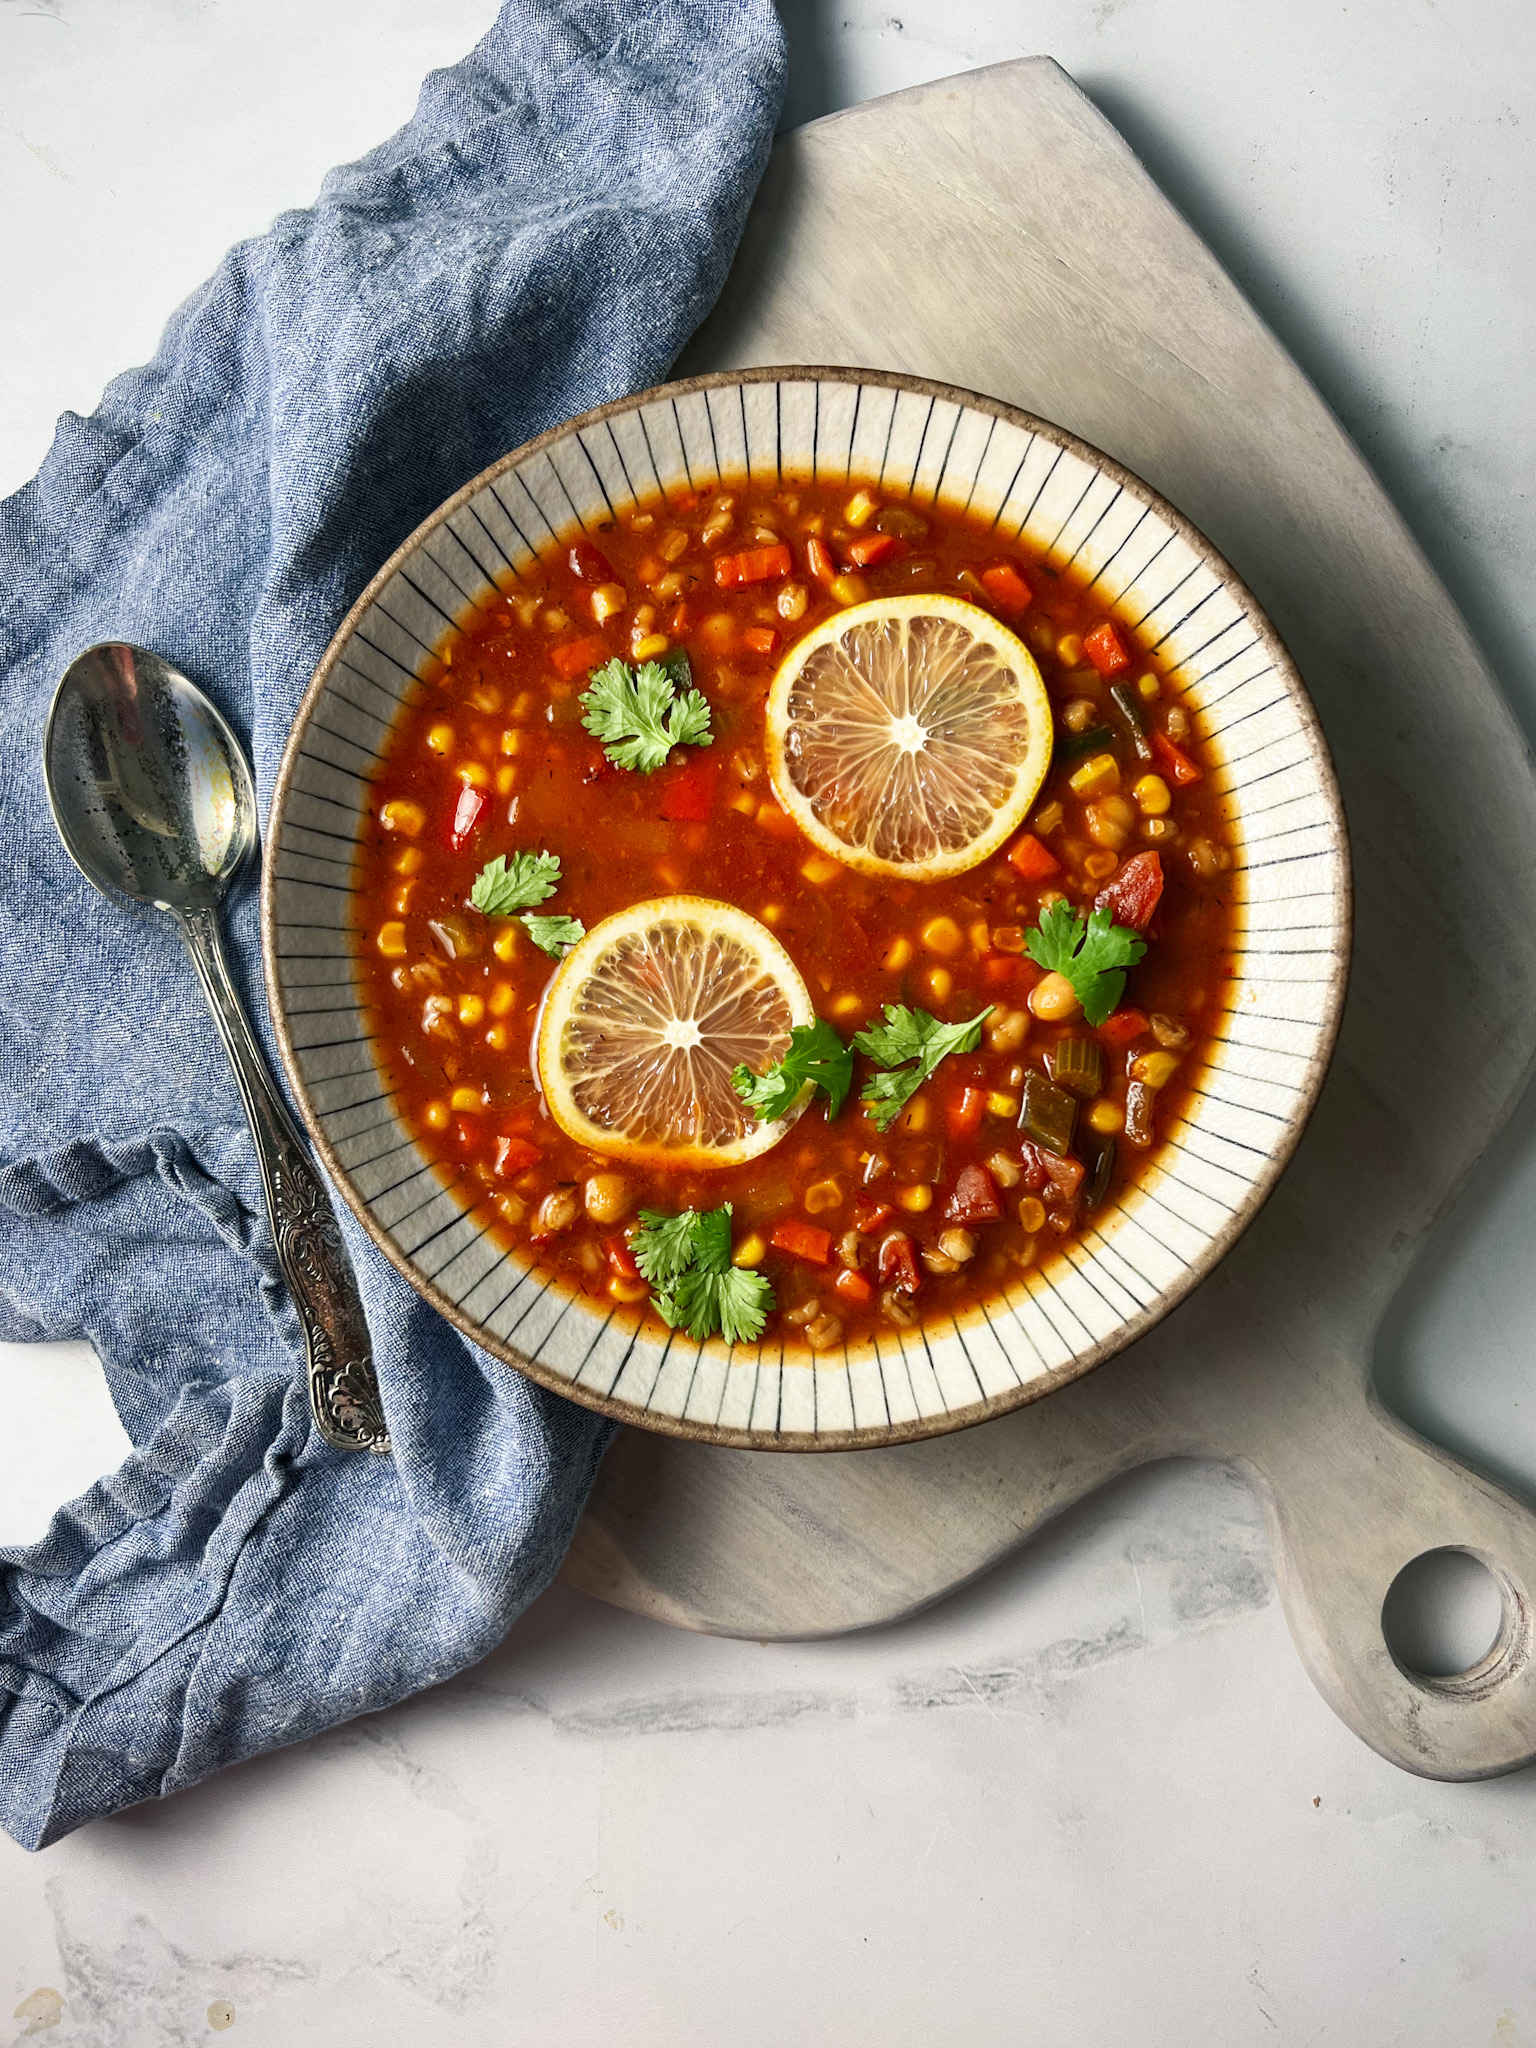 https://www.theperksofbeingus.com/wp-content/uploads/2022/10/bowl-of-panerra-10-vegetable-soup.jpg